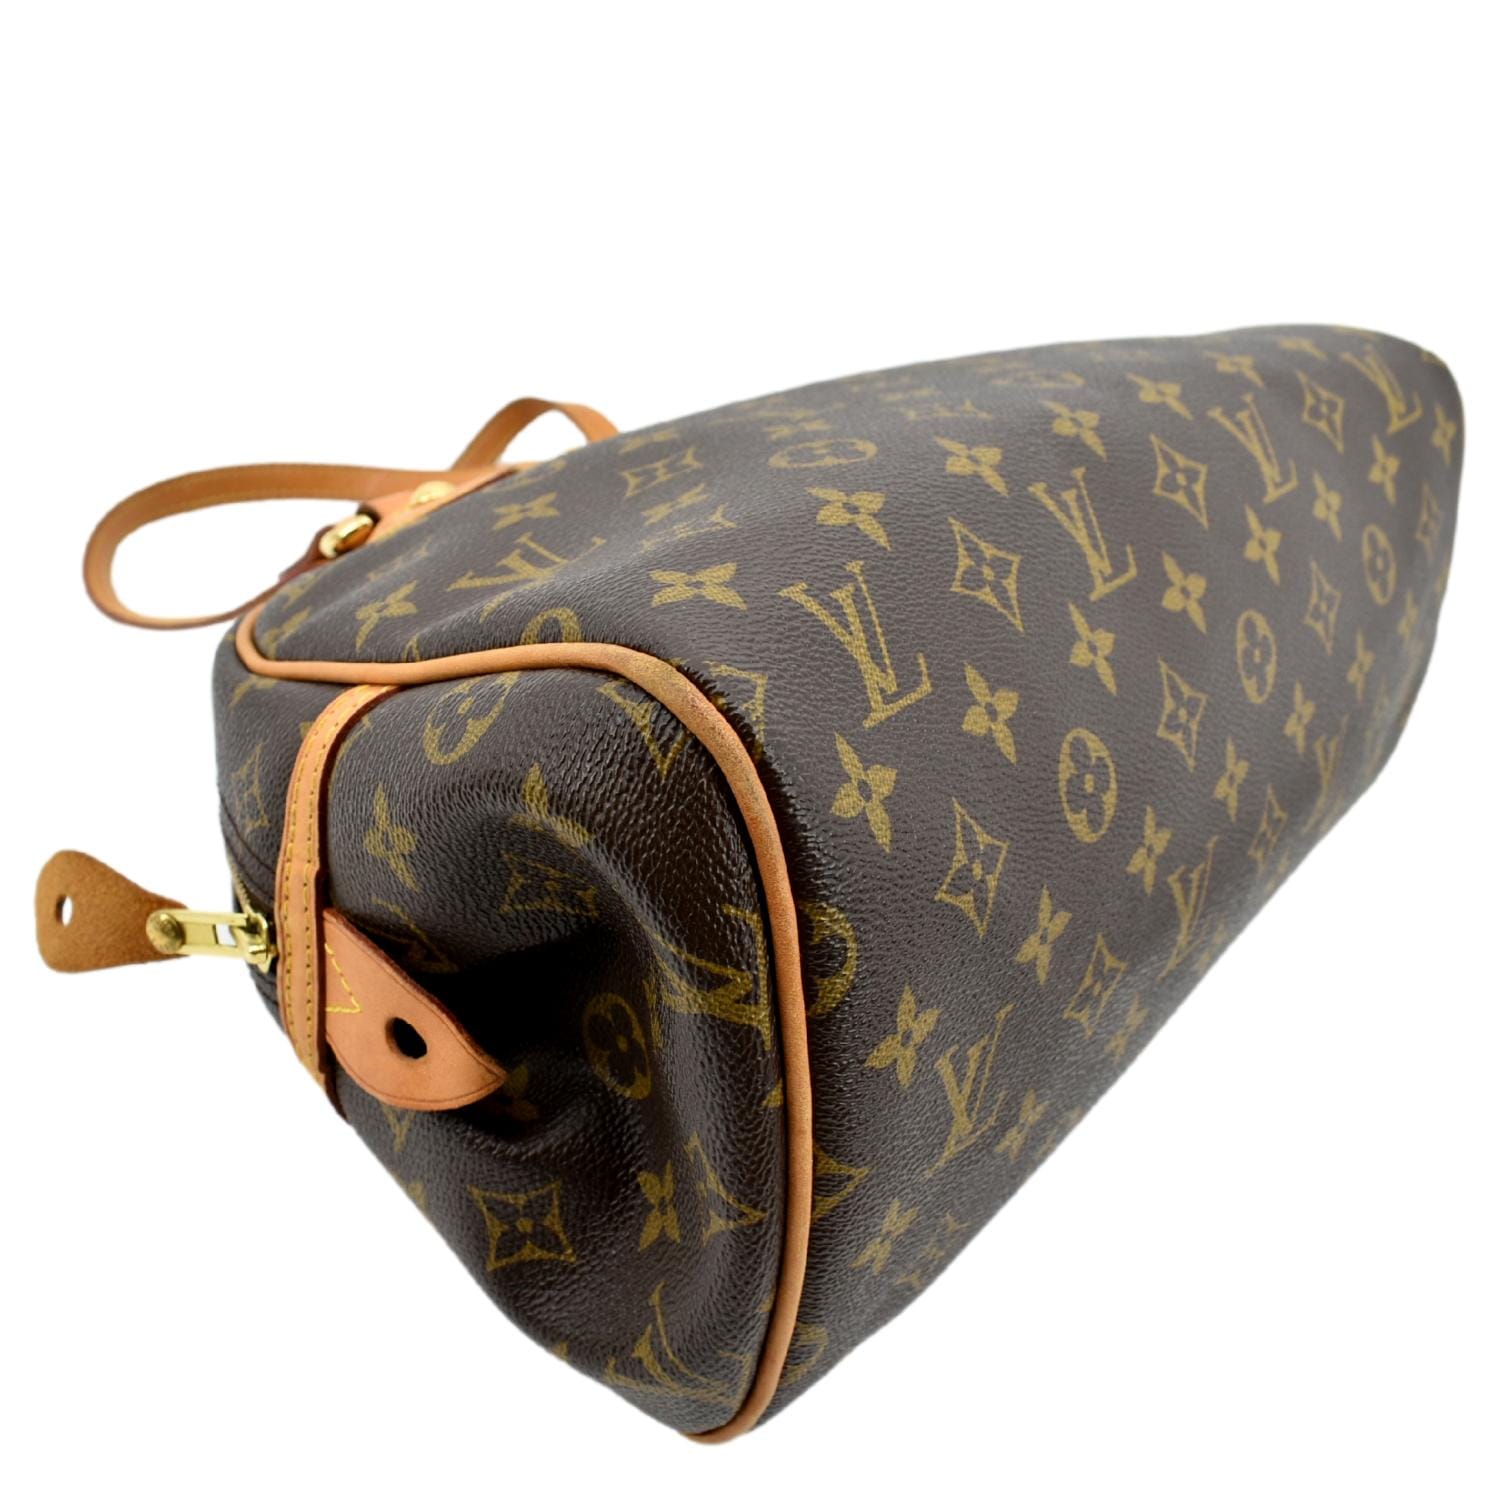 Louis Vuitton Montorgueil PM Shoulder Bag 